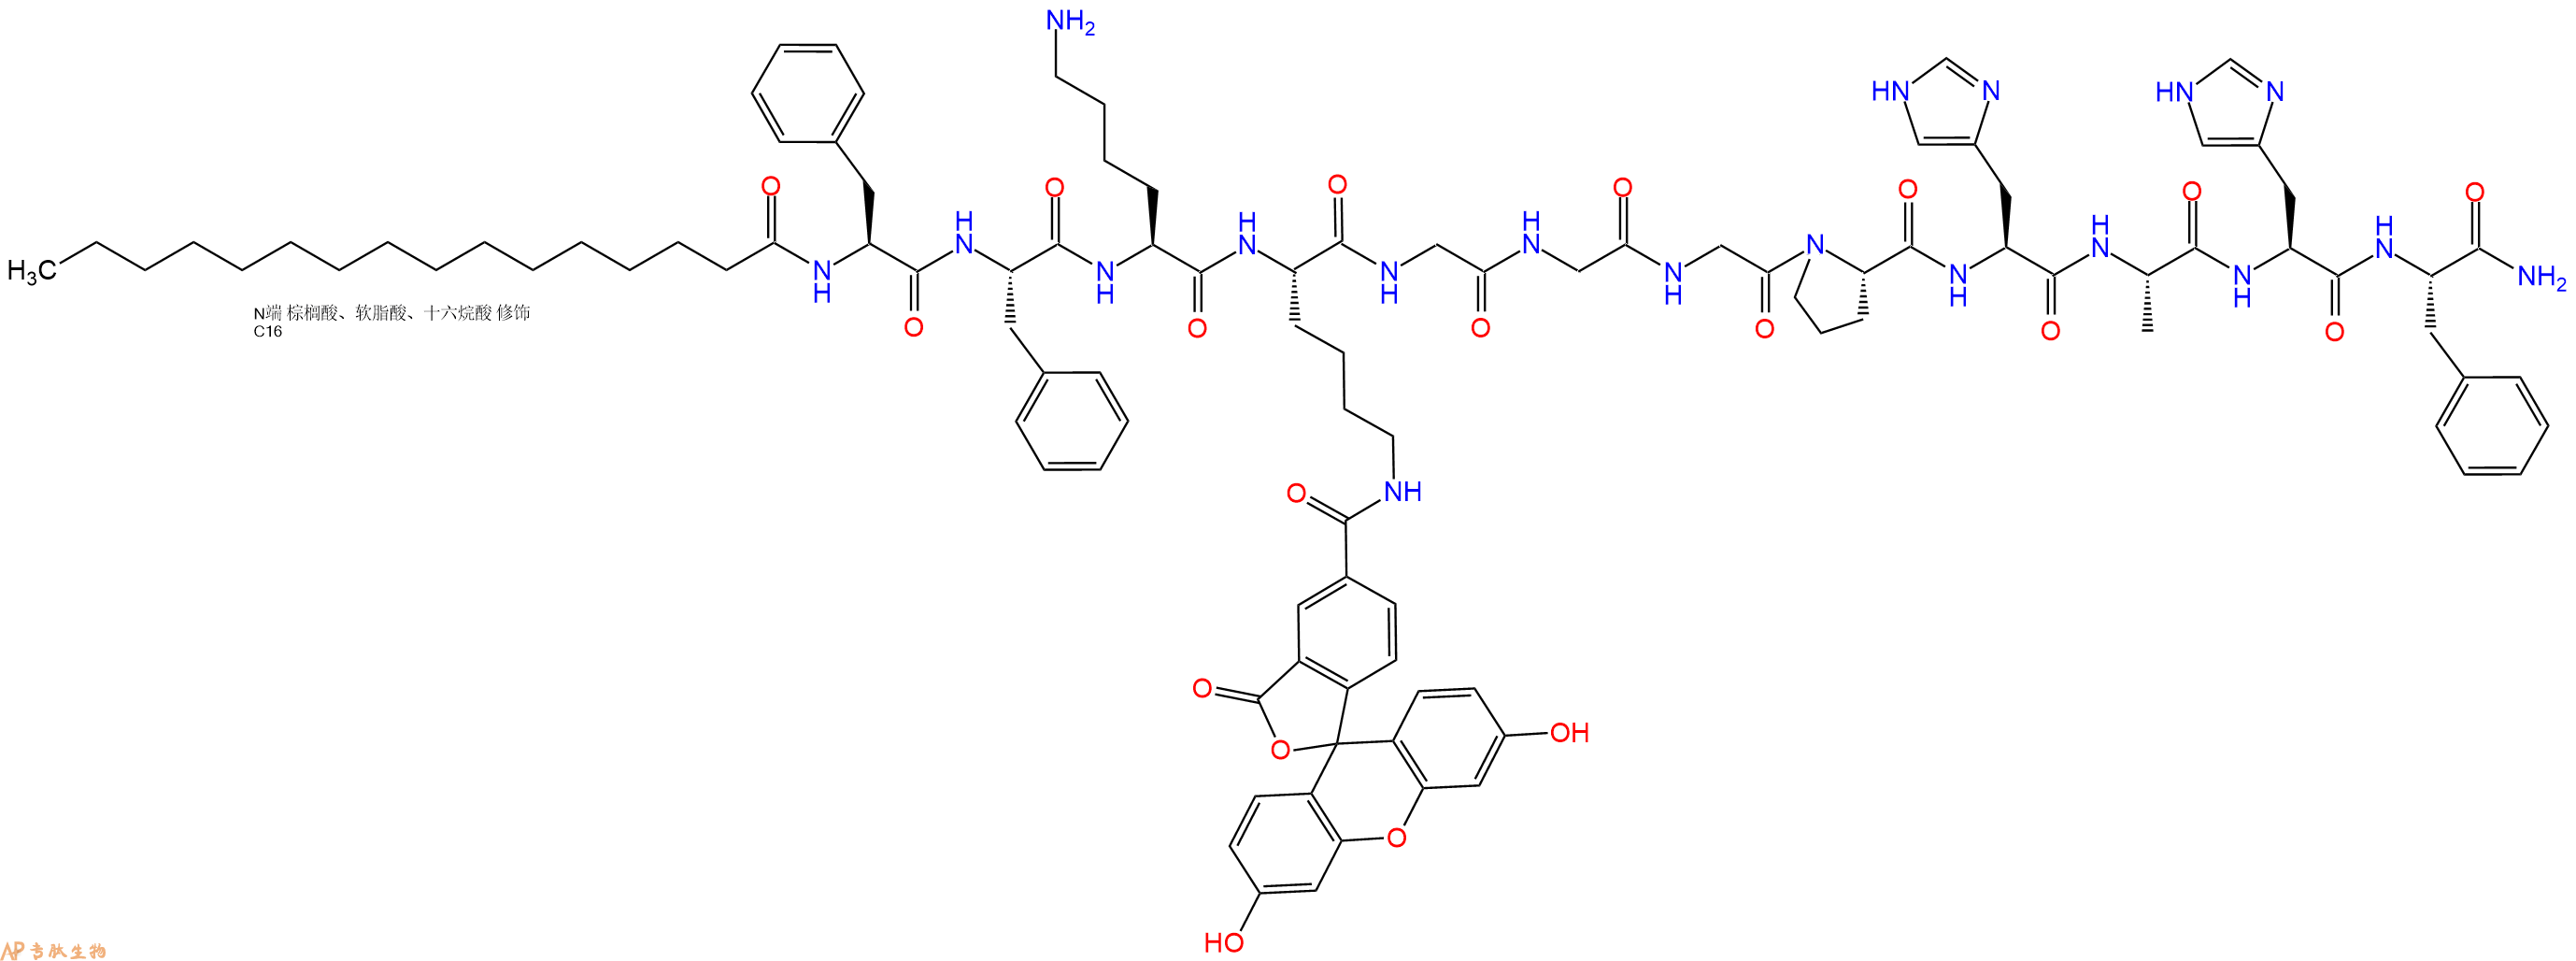 专肽生物产品棕榈酸-Phe-Phe-Lys-Lys(5Fam)-Gly-Gly-Gly-Pro